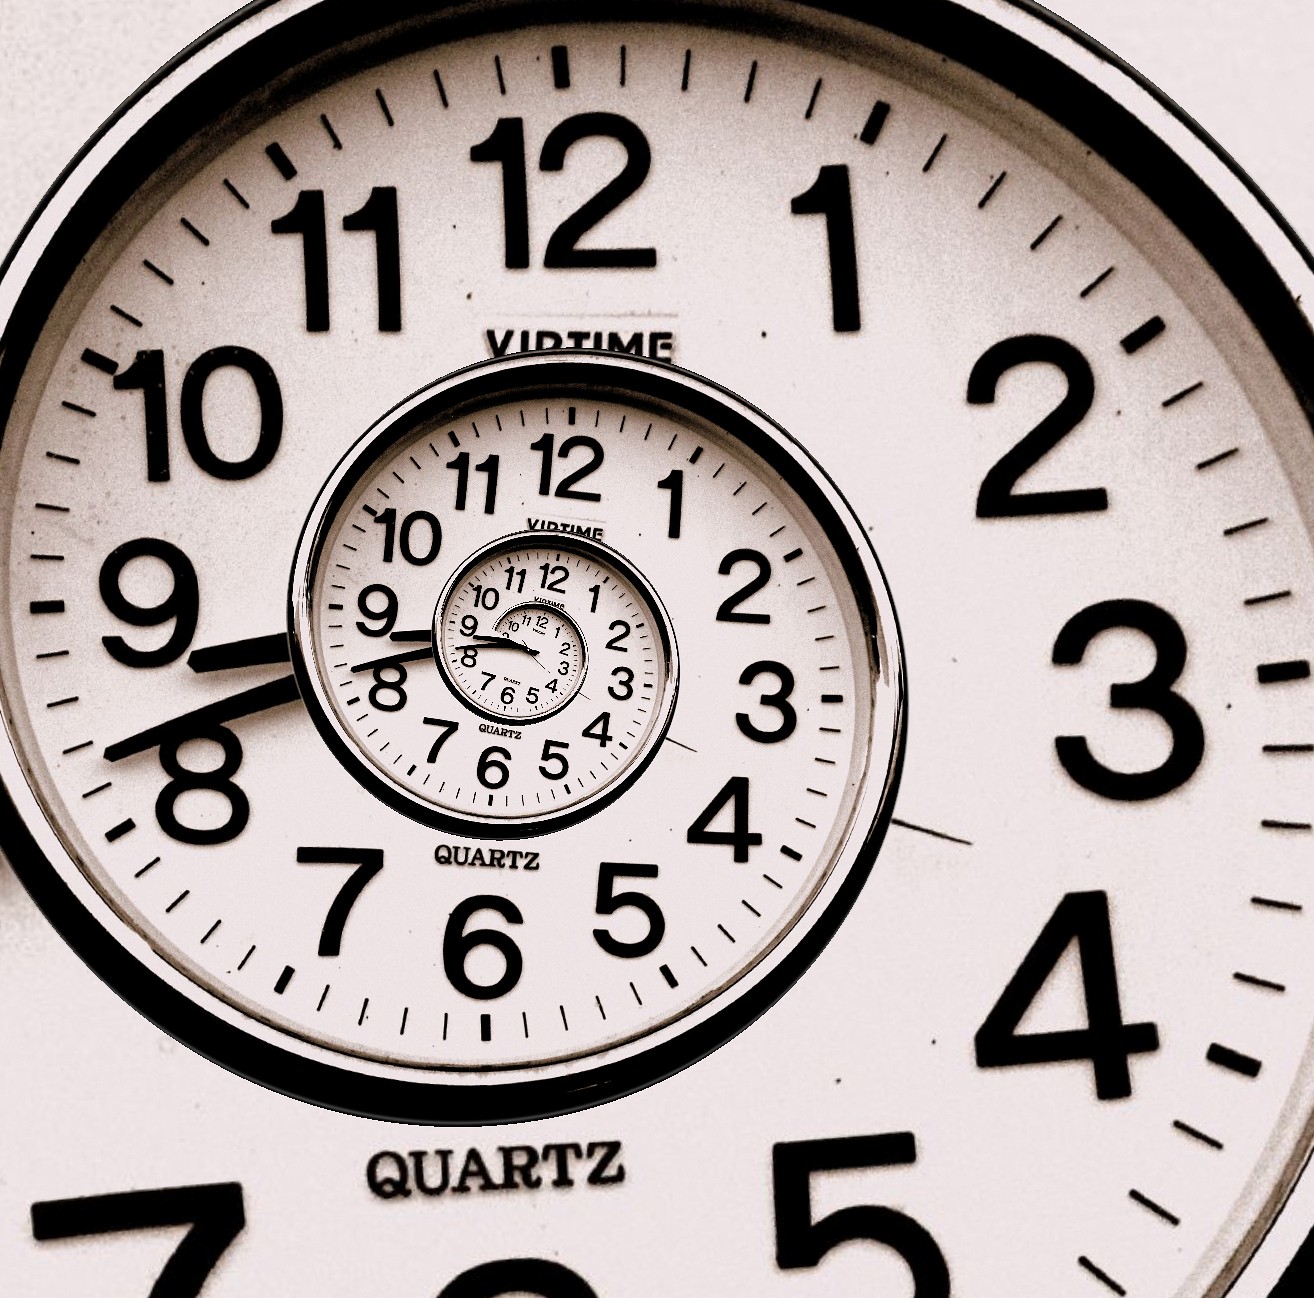 29 февраля 25 часов. Изображение часов. Время картинки. Высказывания про часы. Часы фон.